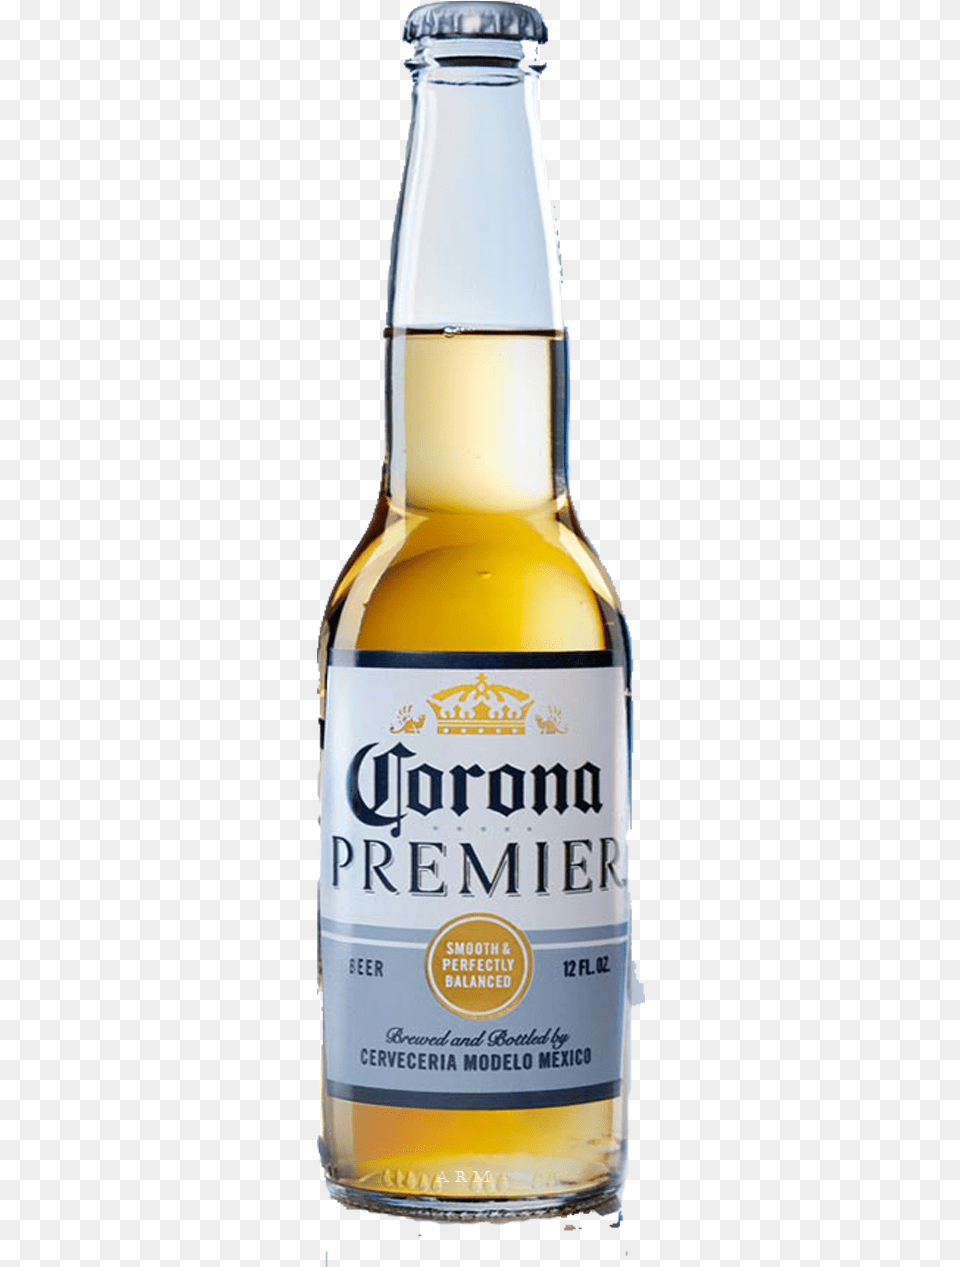 Tipos De Cerveza Corona, Alcohol, Beer, Beer Bottle, Beverage Free Transparent Png